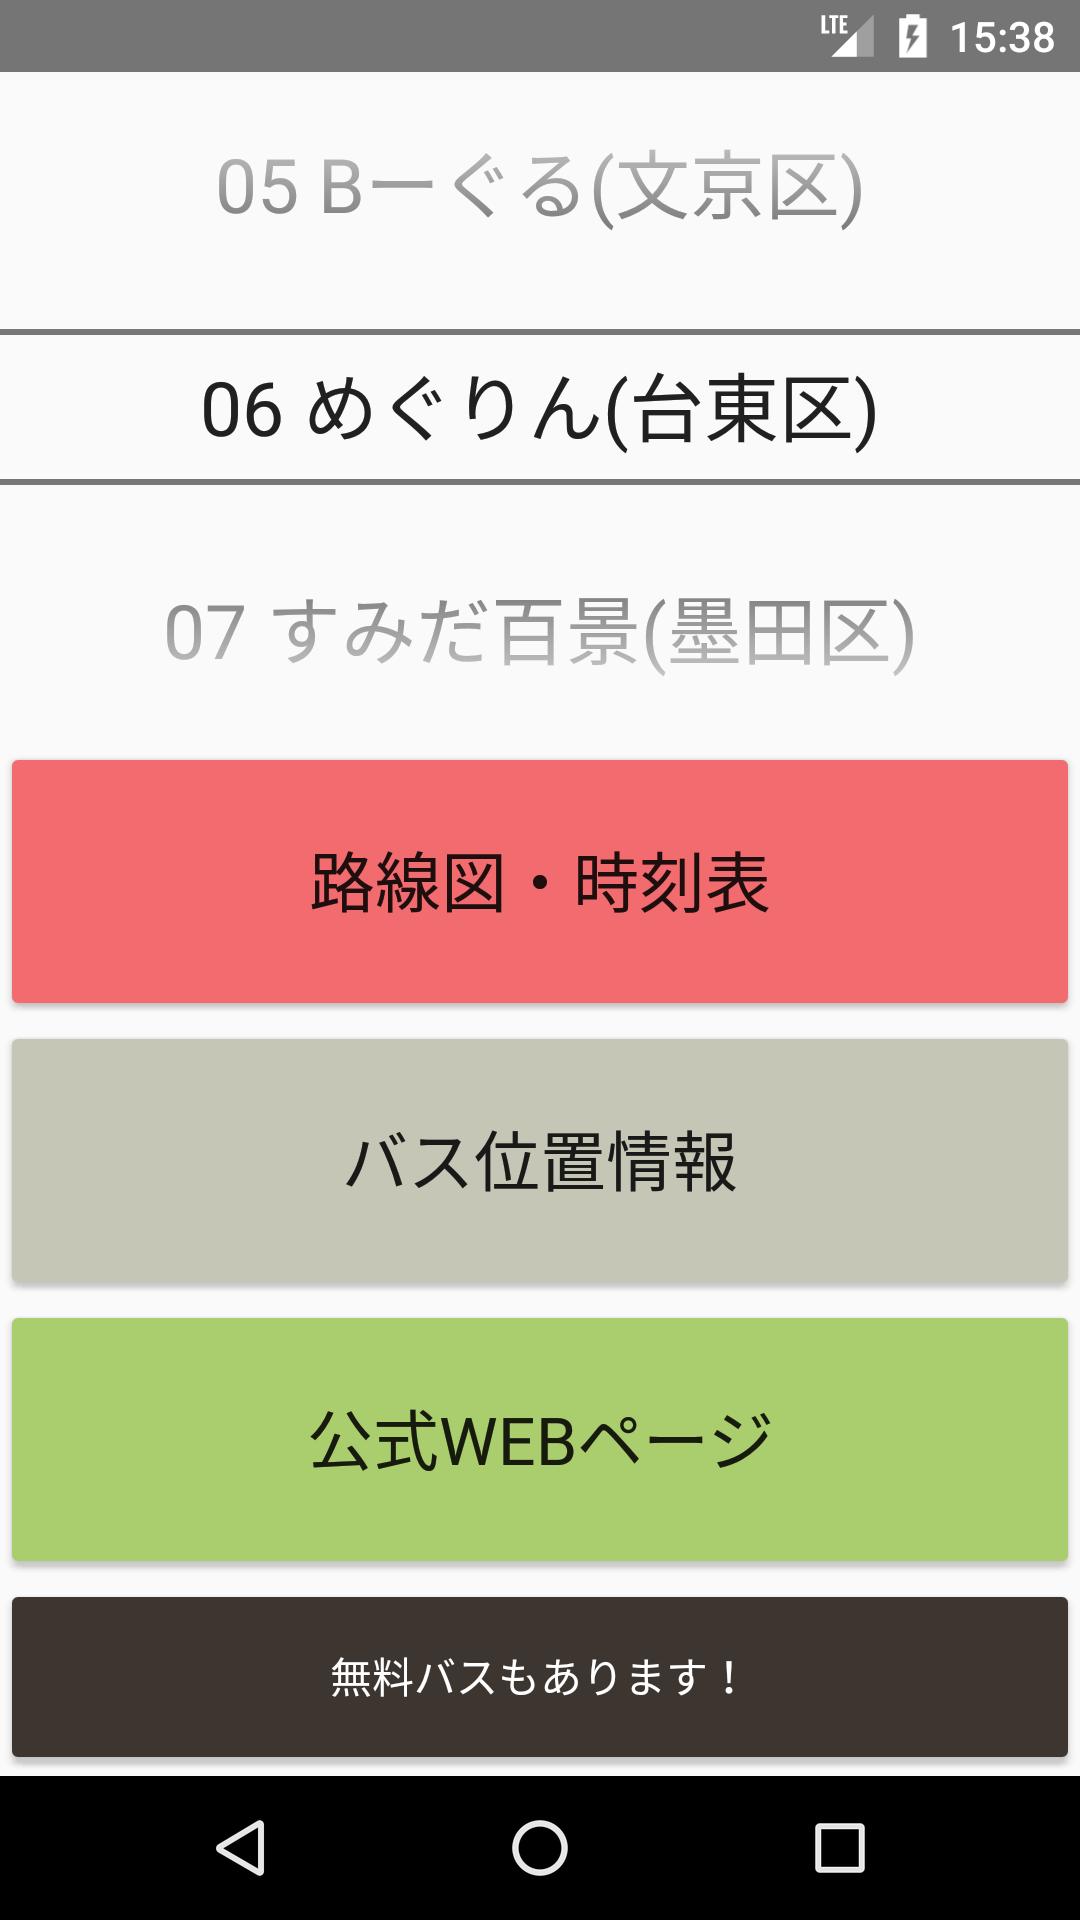 東京23区100円コミュニティバス For Android Apk Download